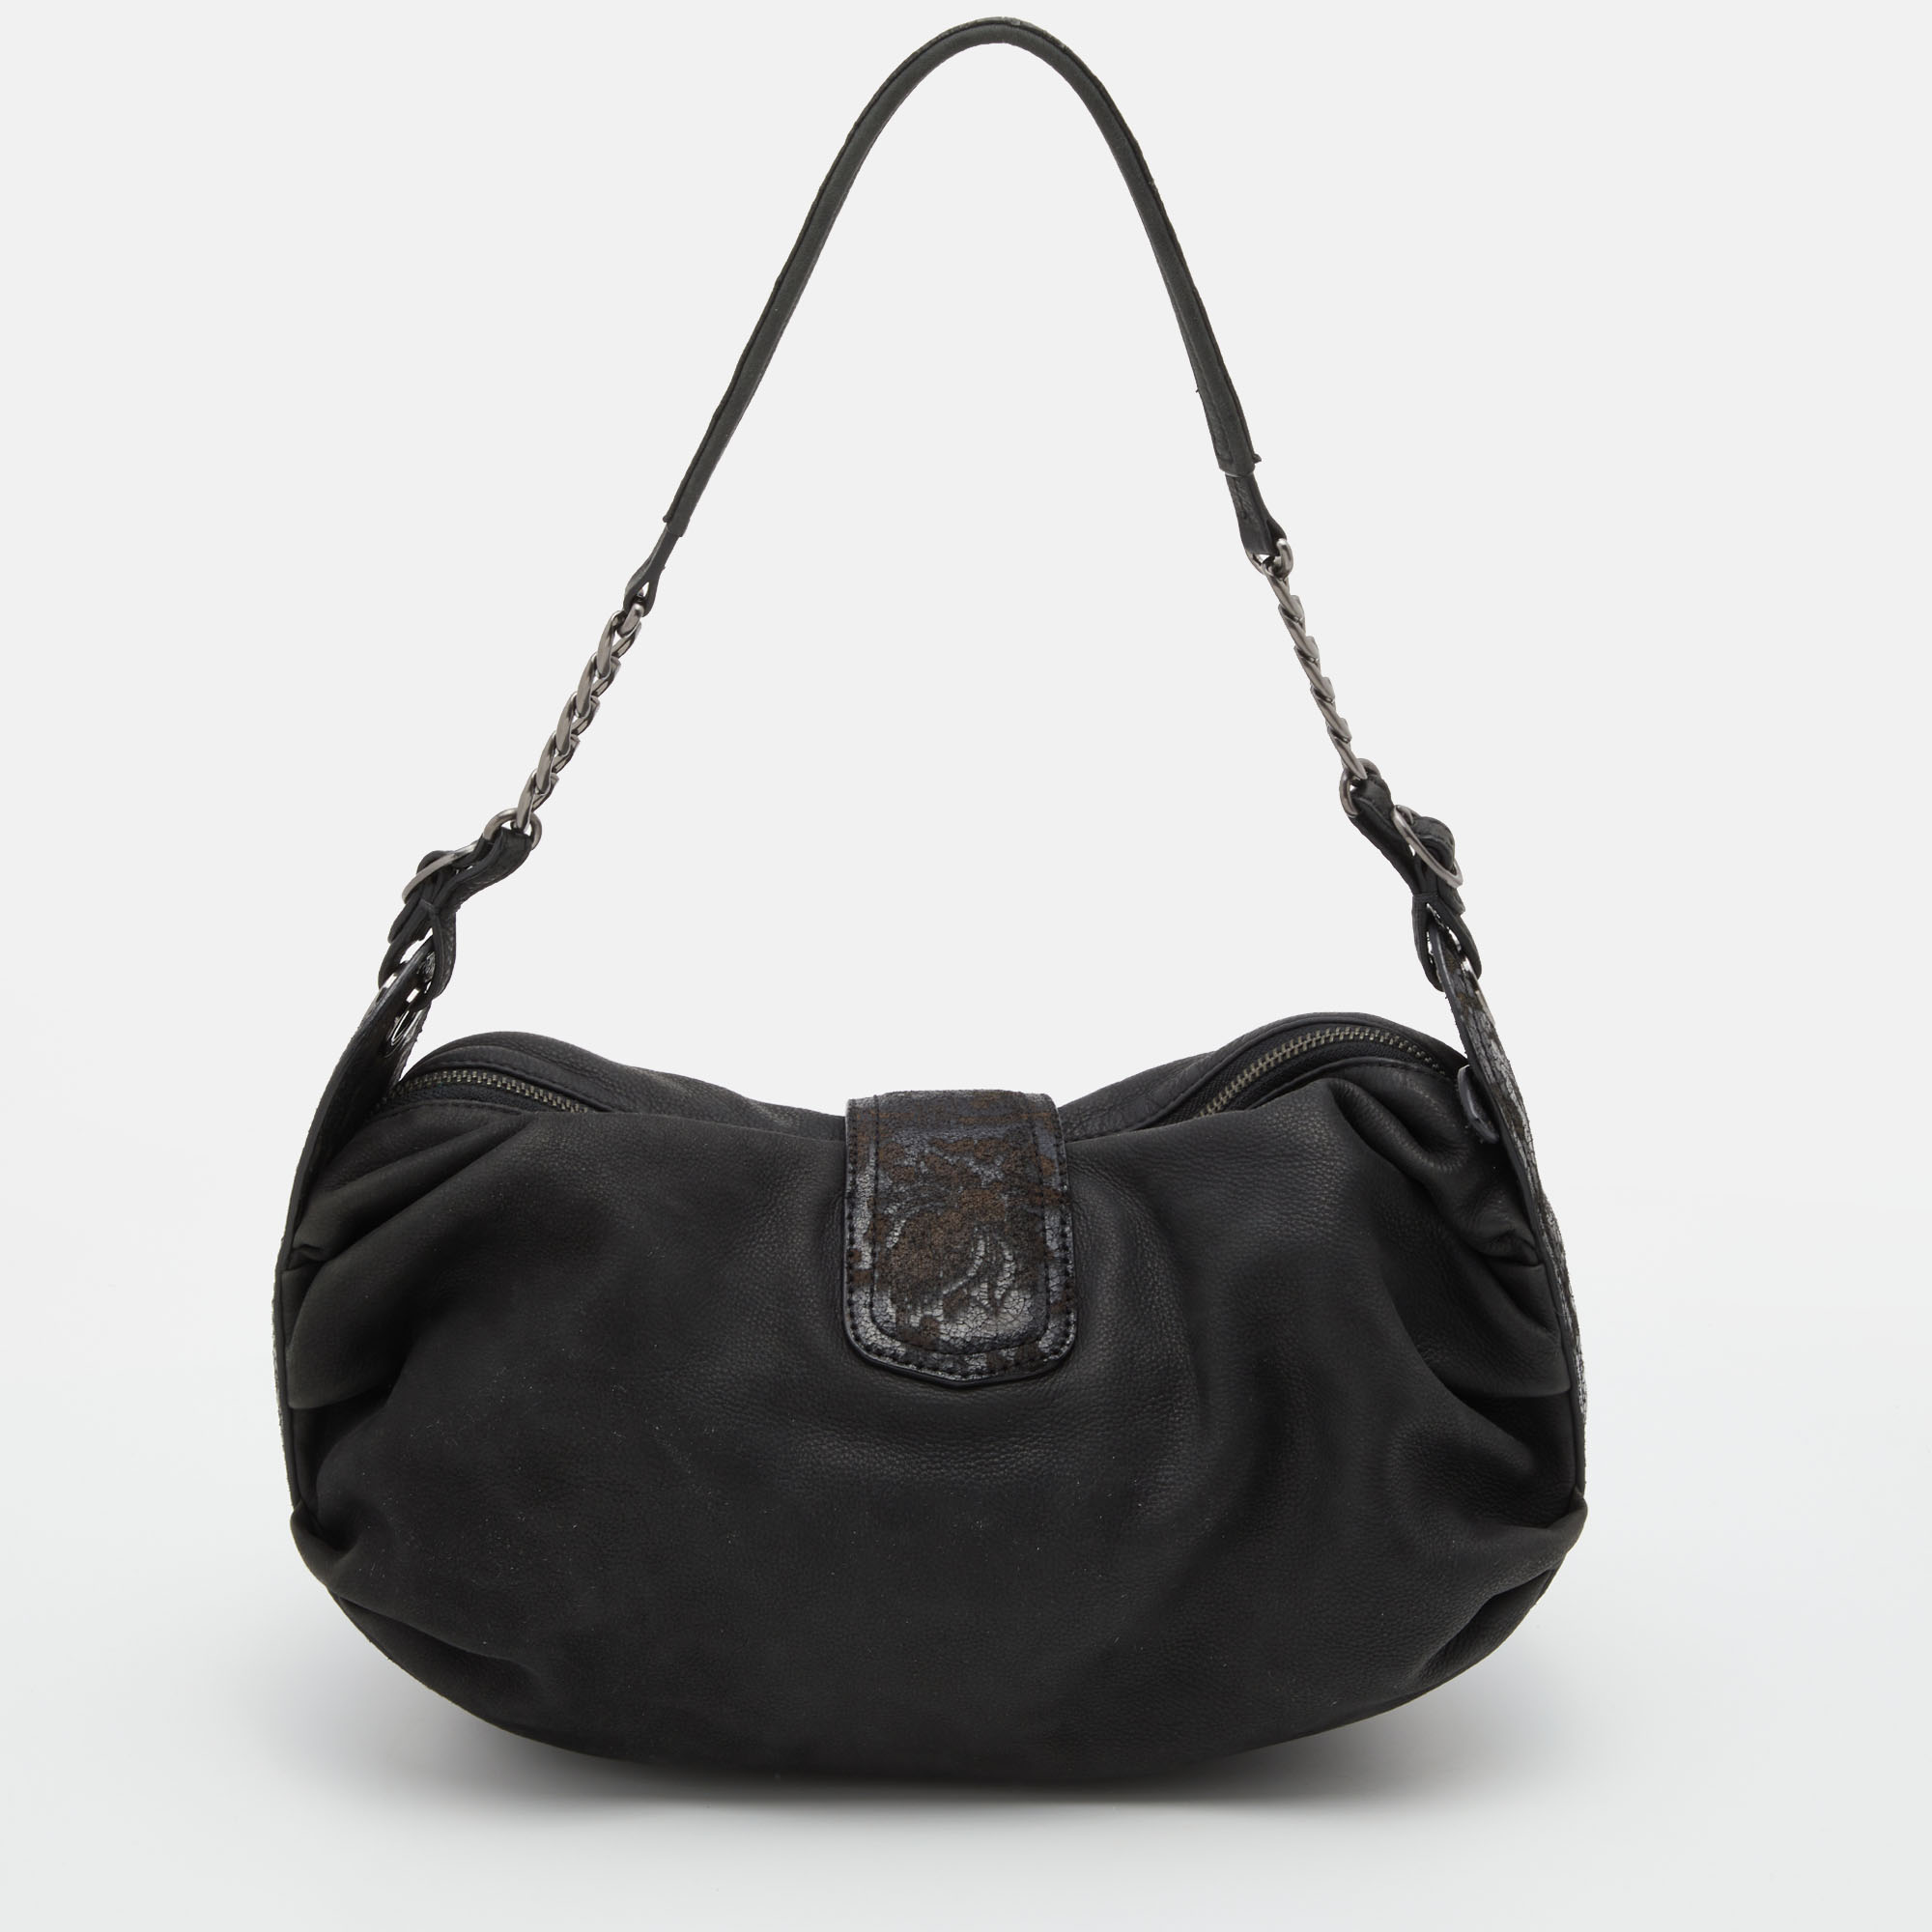 Kenzo Black Leather Shoulder Bag